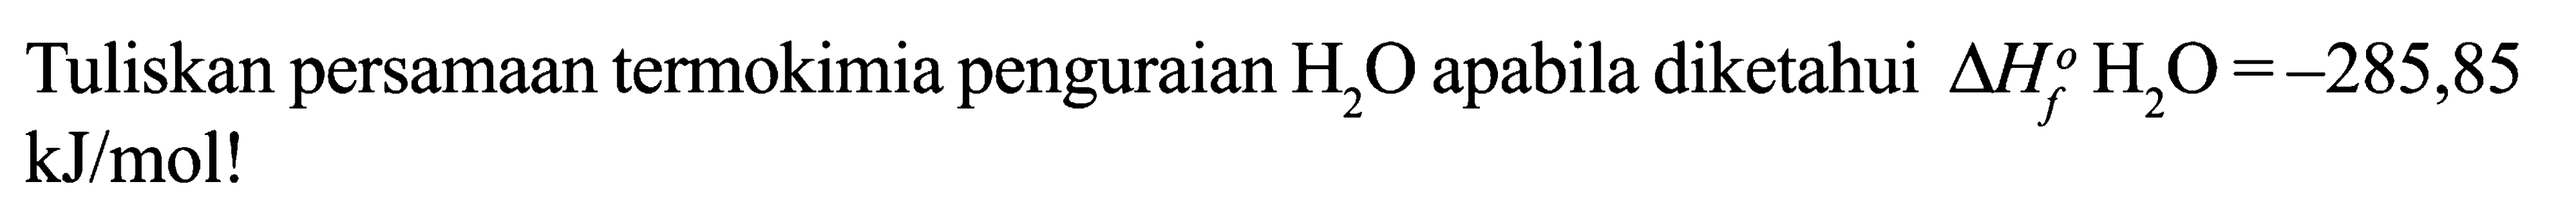 Tuliskan persamaan termokimia penguraian H2O apabila diketahui delta Hf H2O = -285,85 kJ/mol!